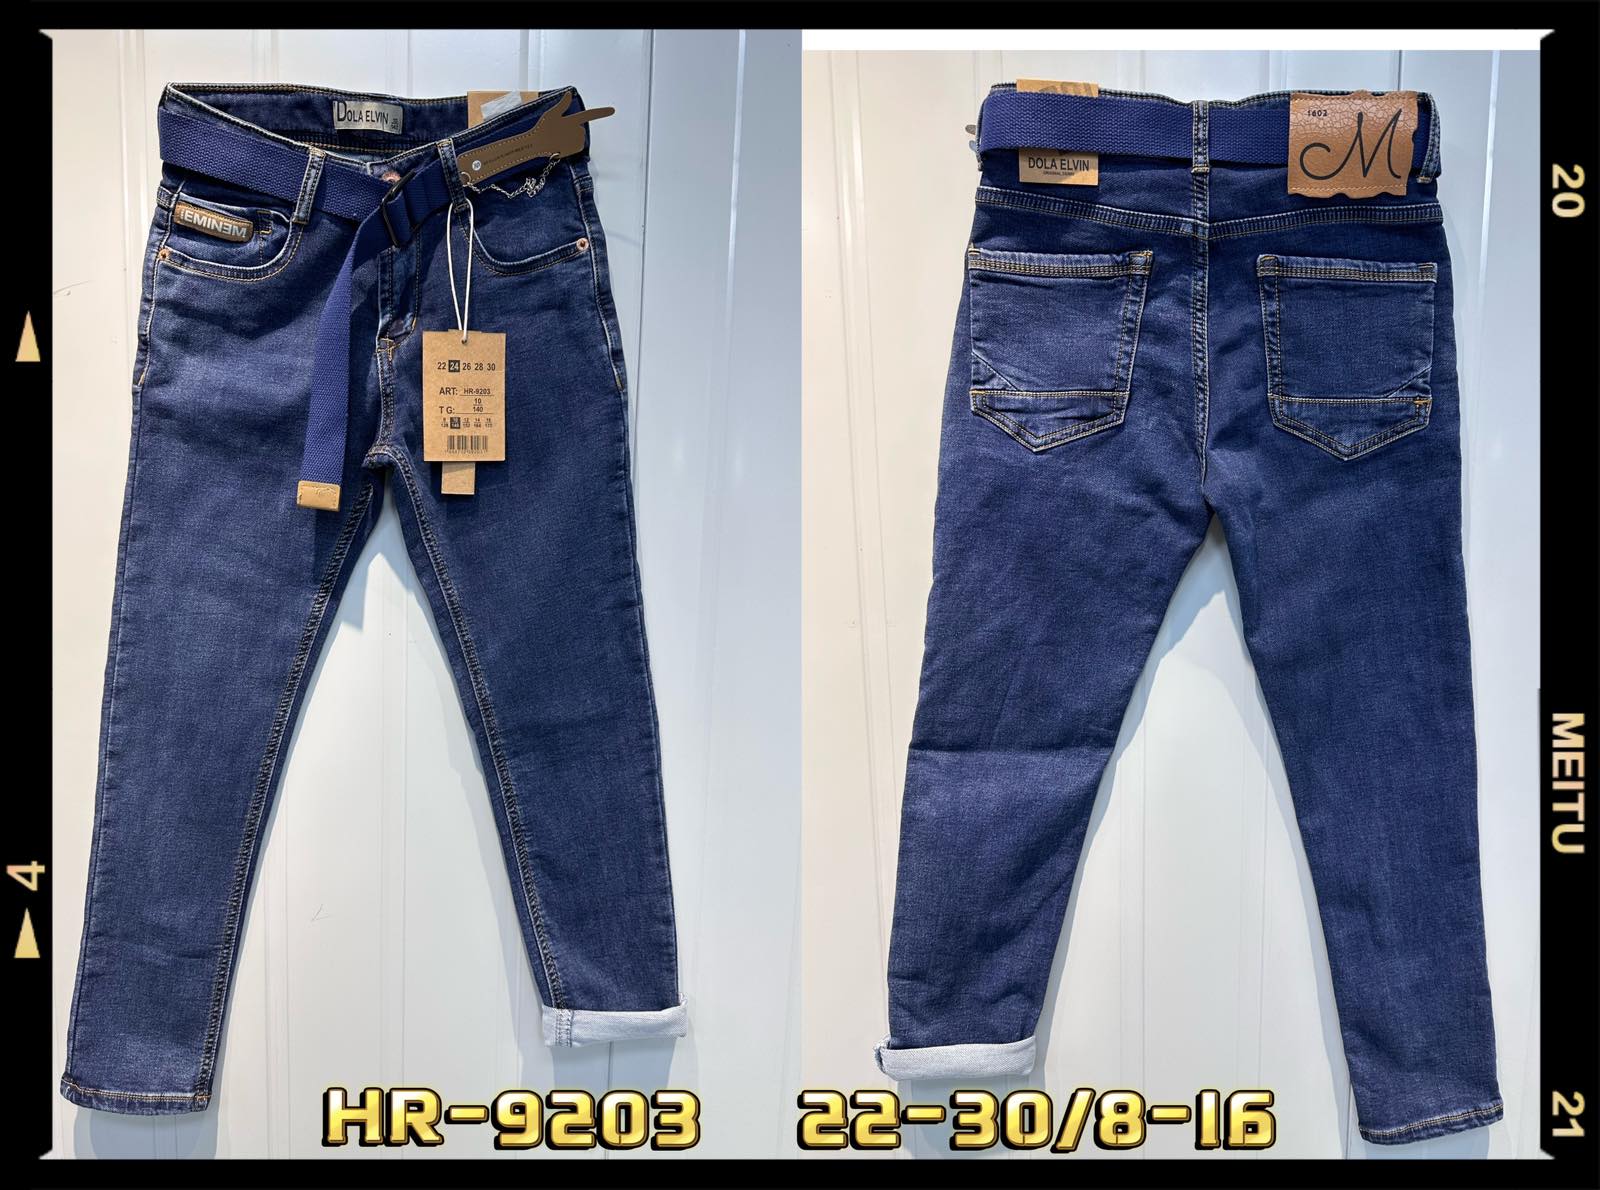 Spodnie  jeansowe  chłopięca Roz 24-30/8-16, 1 kolor Paczka 10 szt